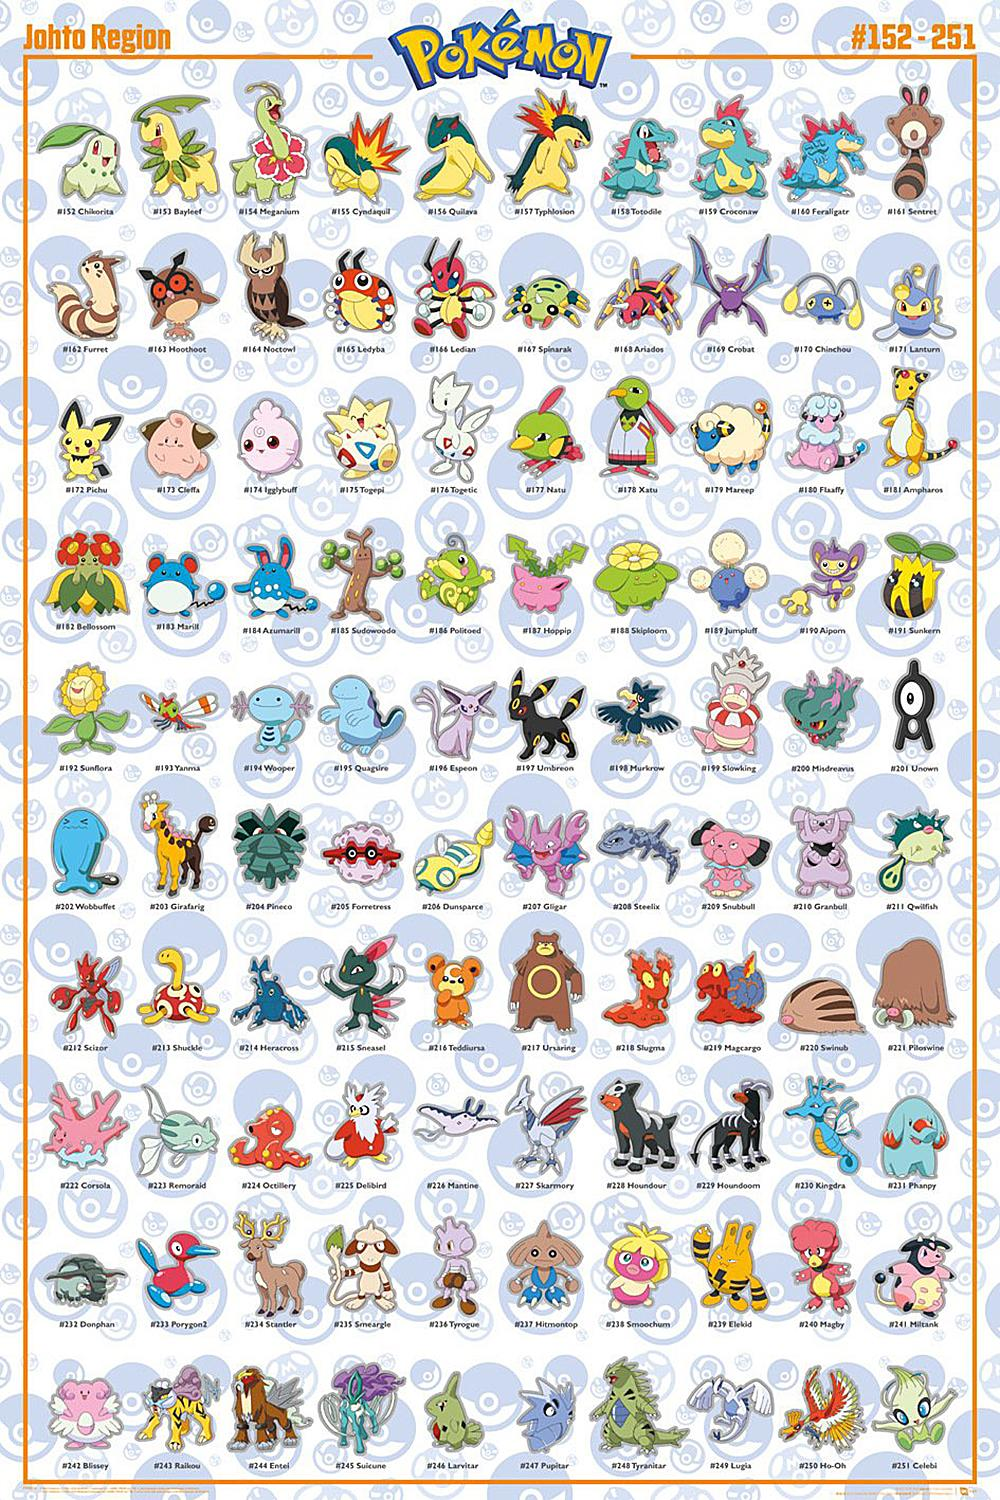 Region Pokémon EYE GB Poster Johto